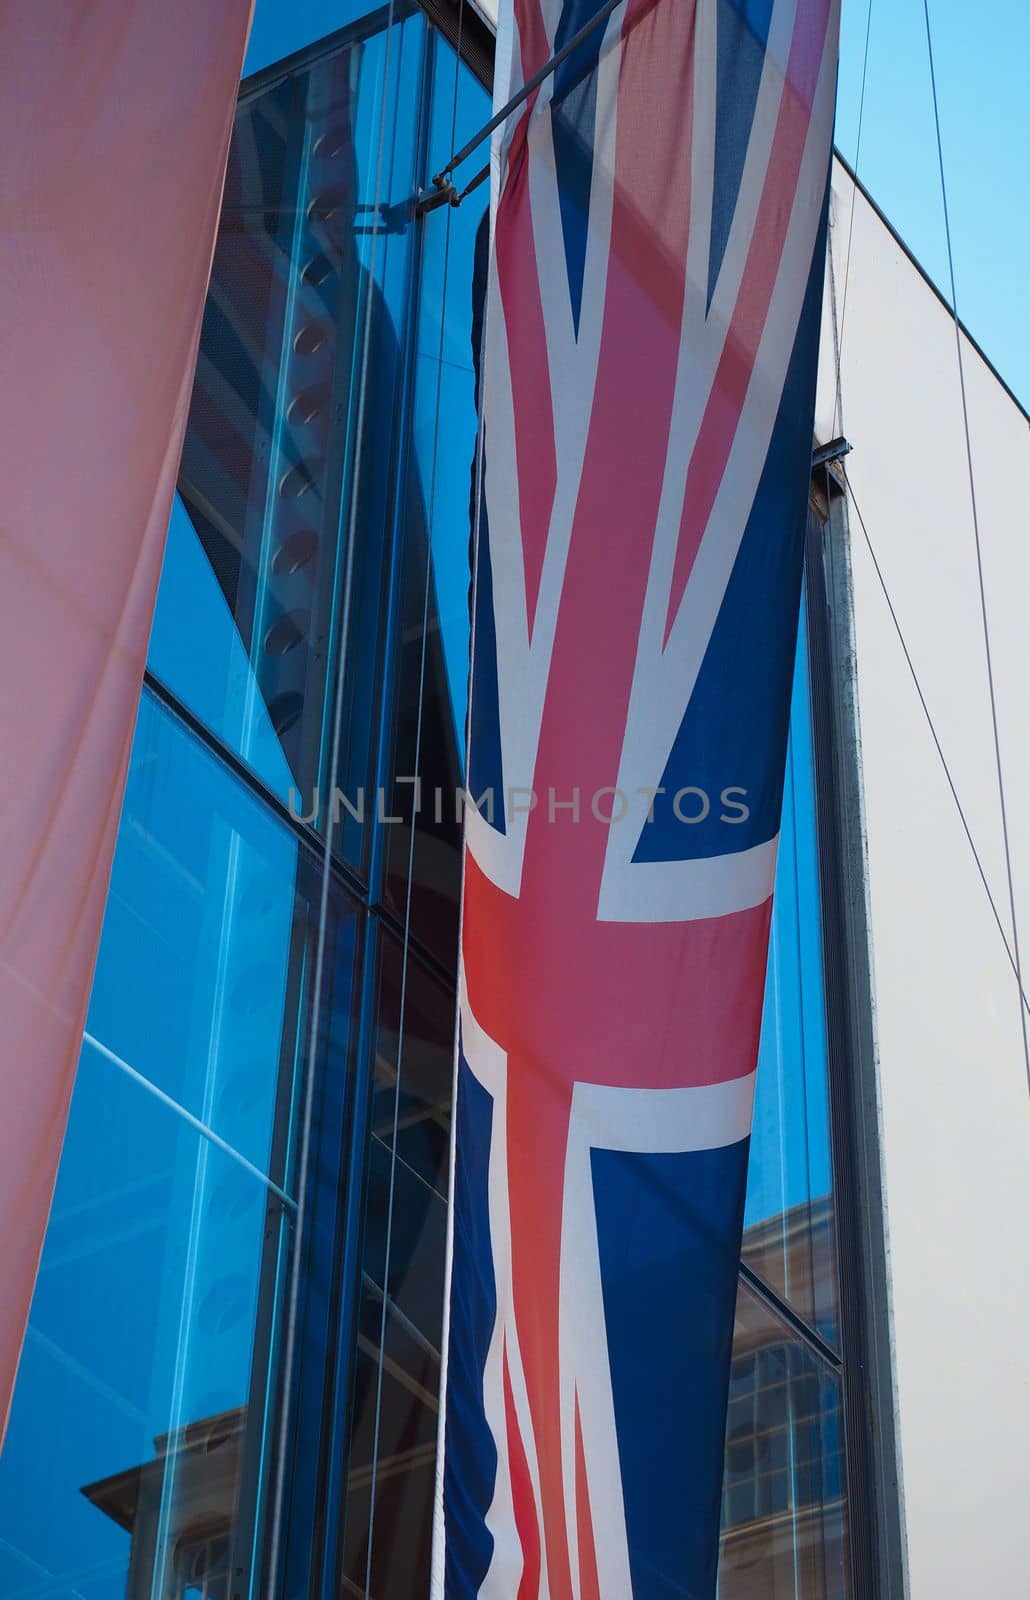 the British national flag of United Kingdom, Europe